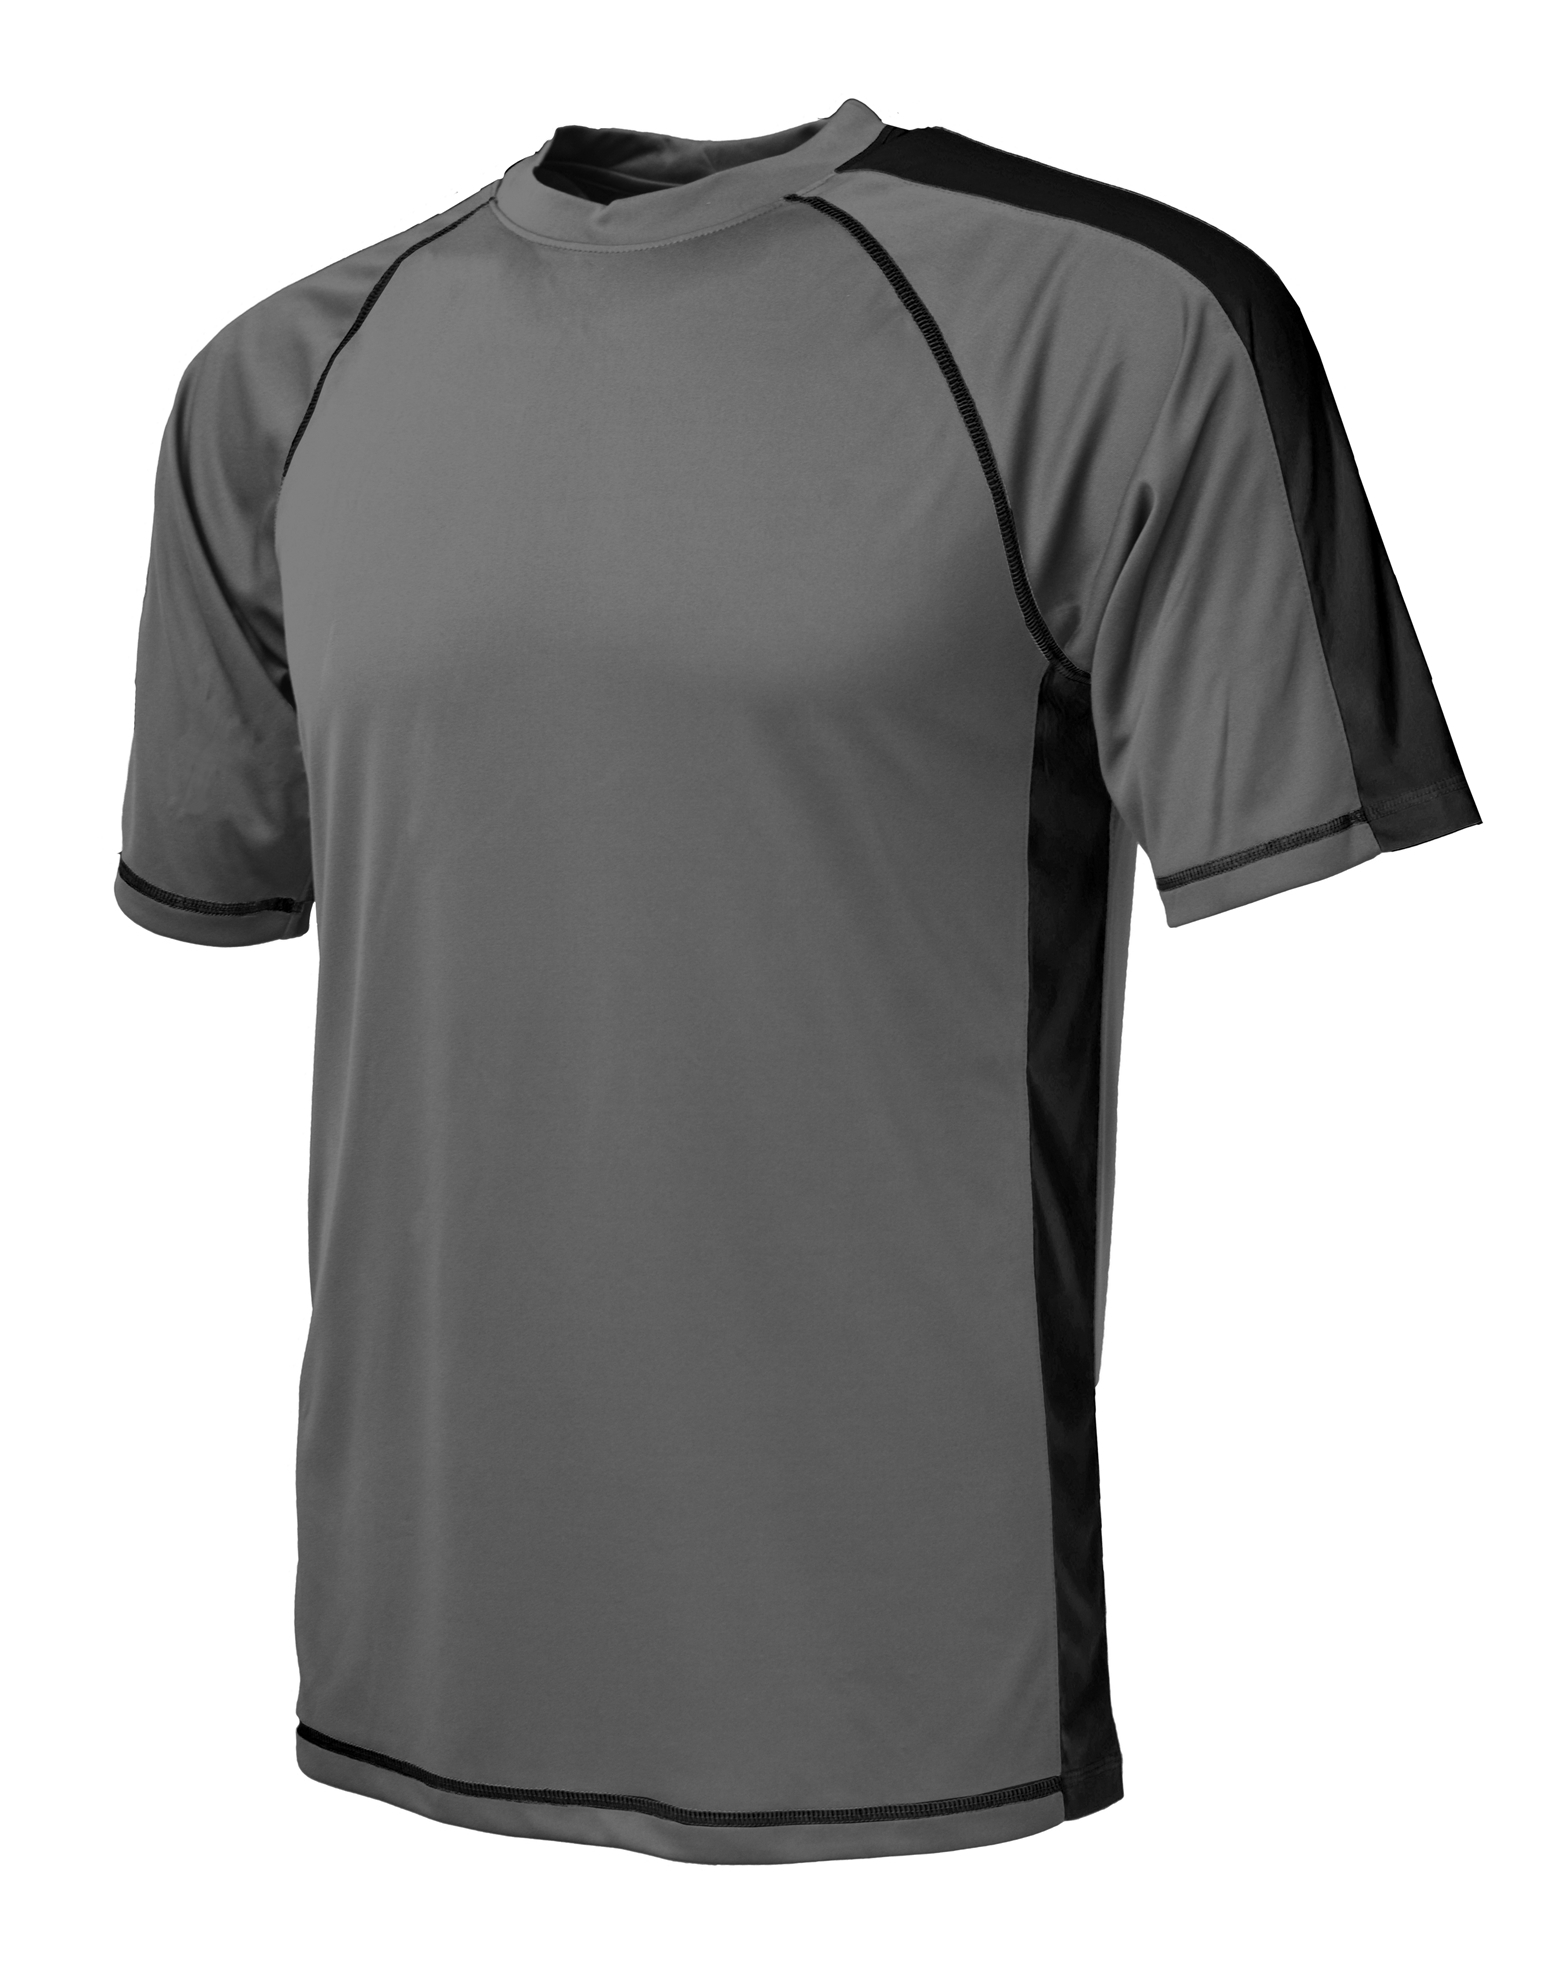 BAW Athletic Wear XT80 - Men's XT Sideline T-Shirt